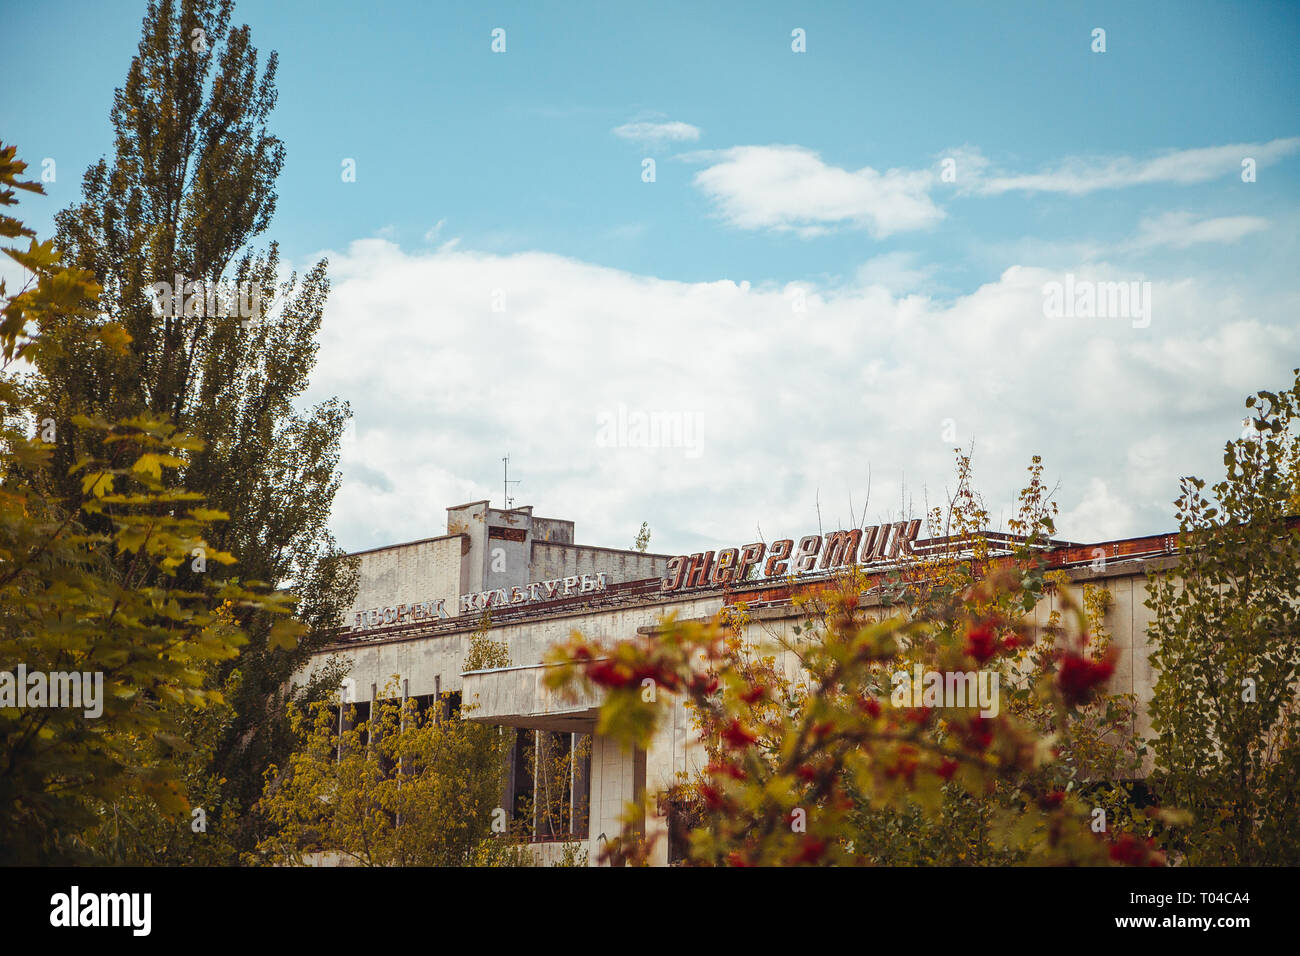 Palacio de la cultura energética en la zona de exclusión de Chernobyl. Zona radiactiva en la ciudad de Pripyat - ciudad fantasma abandonados. Historia de la catástrofe de Chernobyl Foto de stock